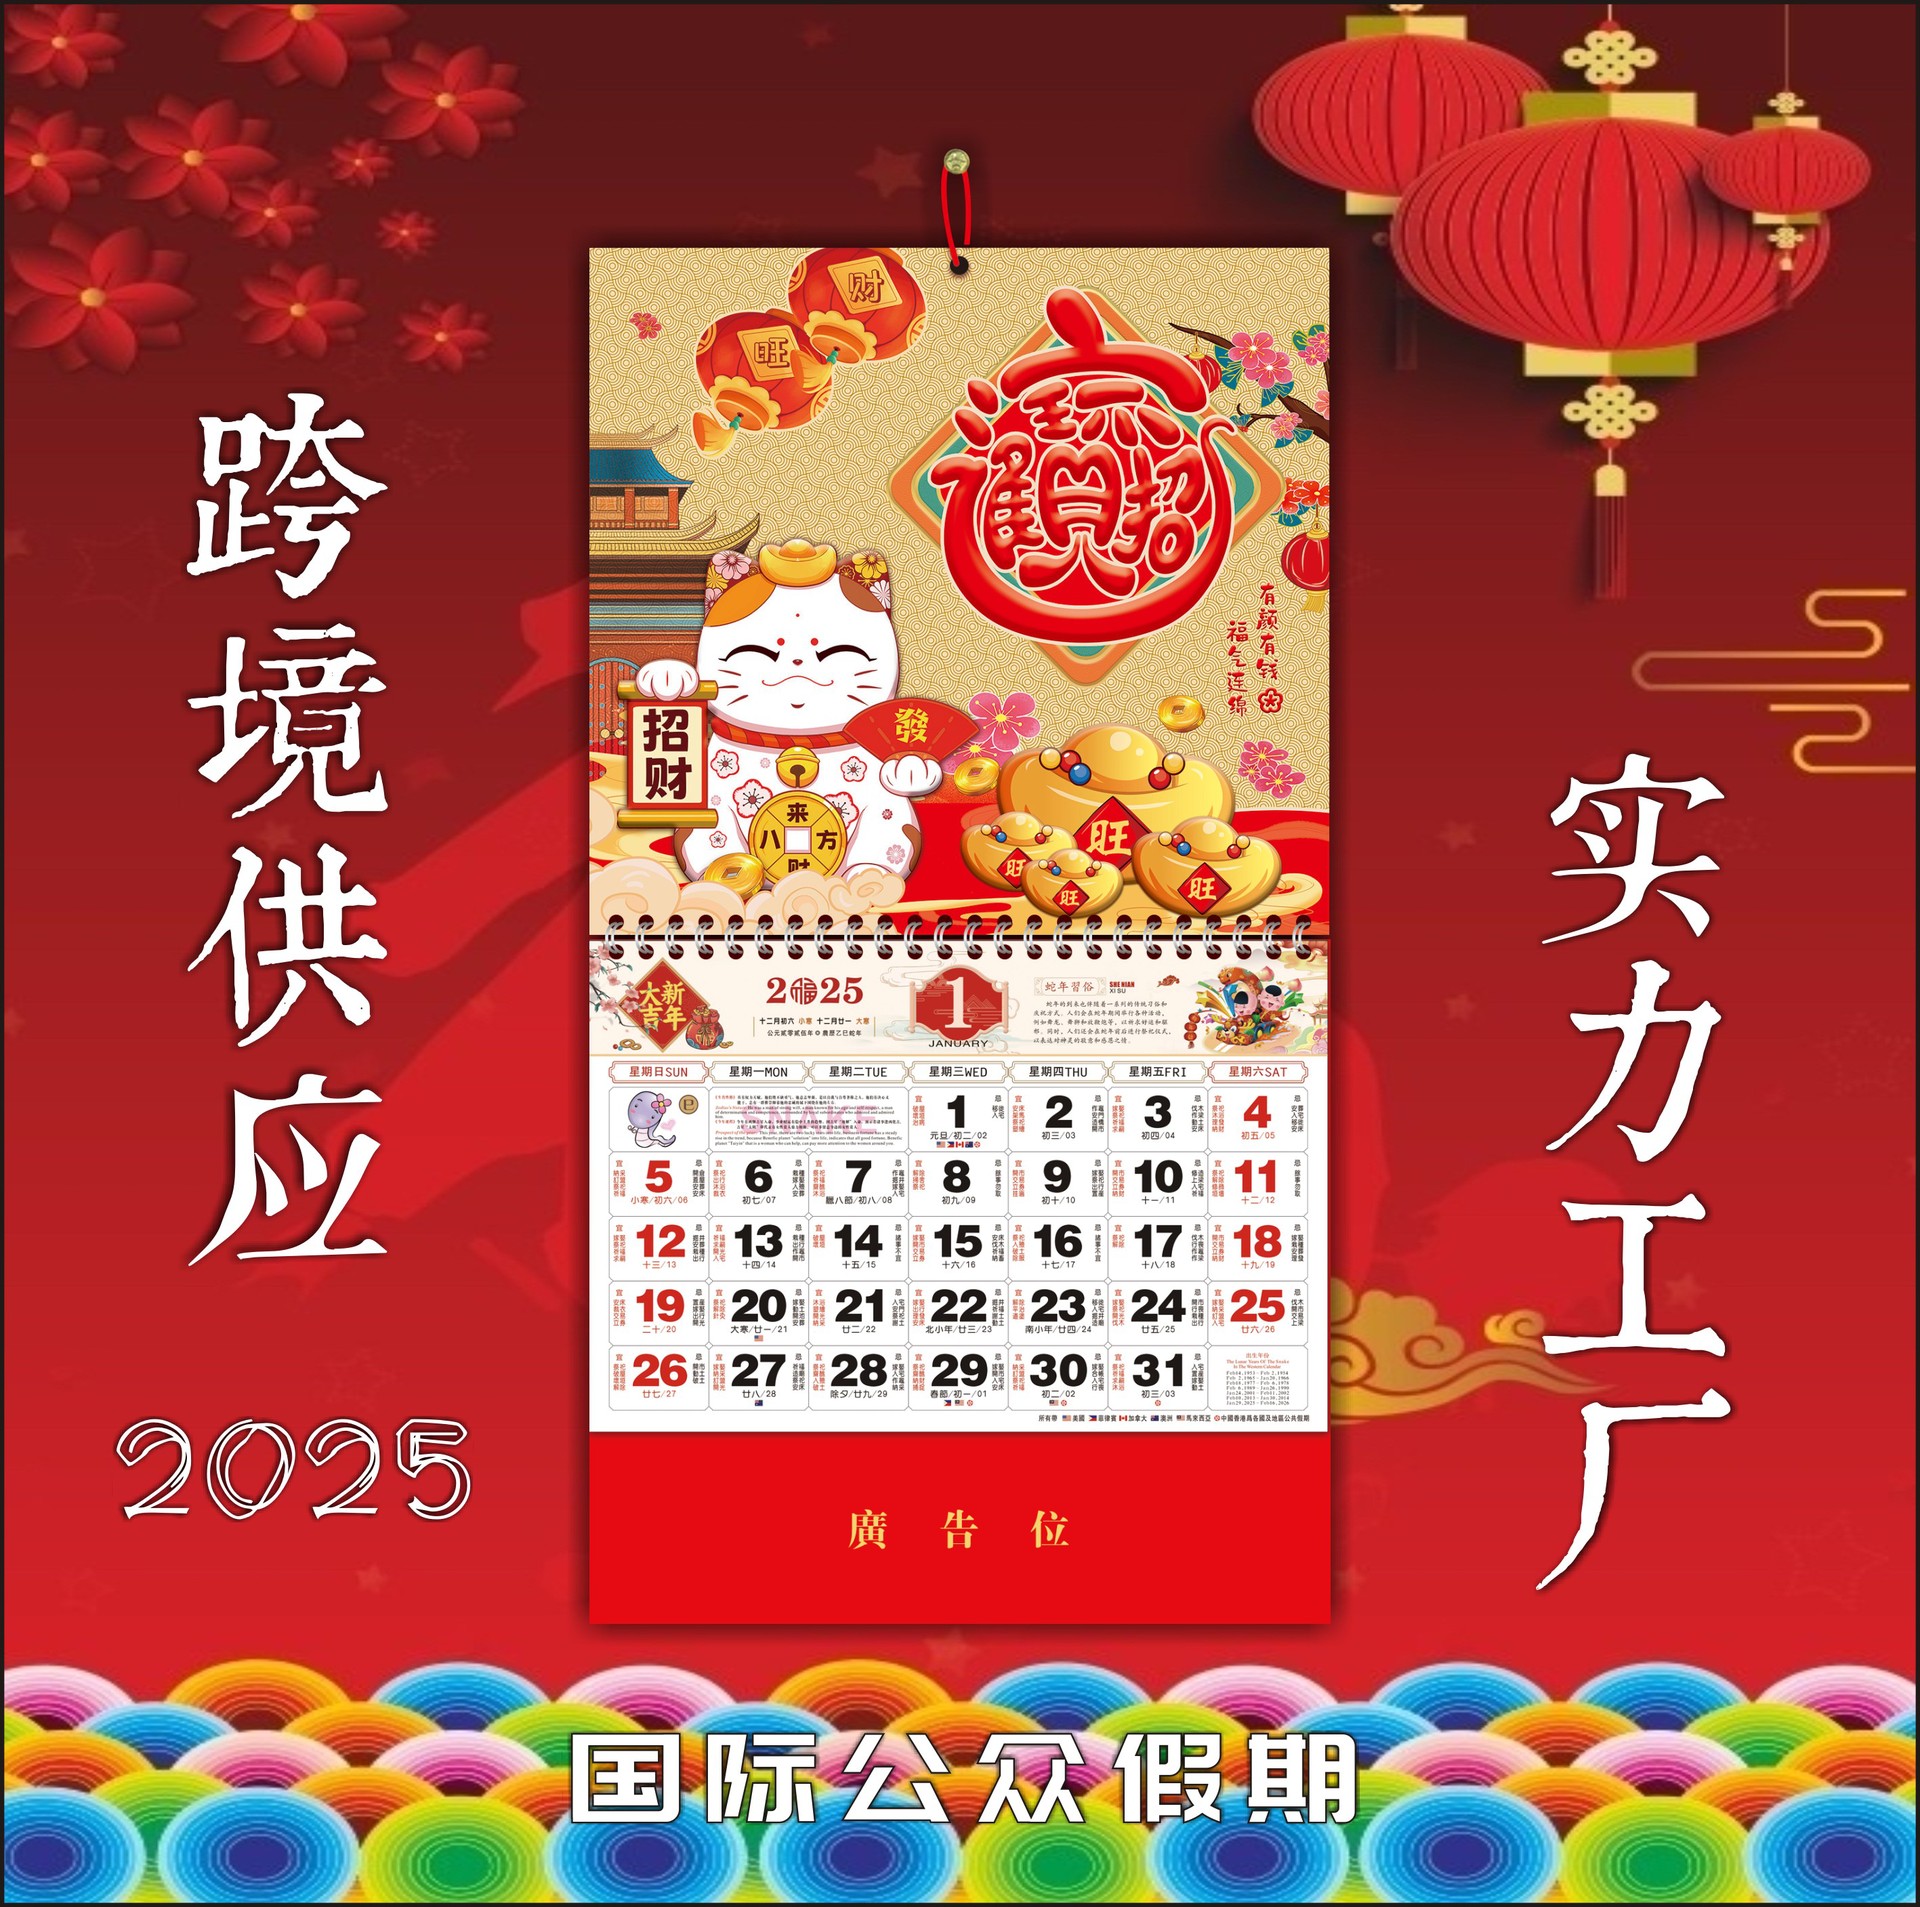 广州挂历定制印刷2025蛇年月历福字吊牌家用年历烫金企业广告日历